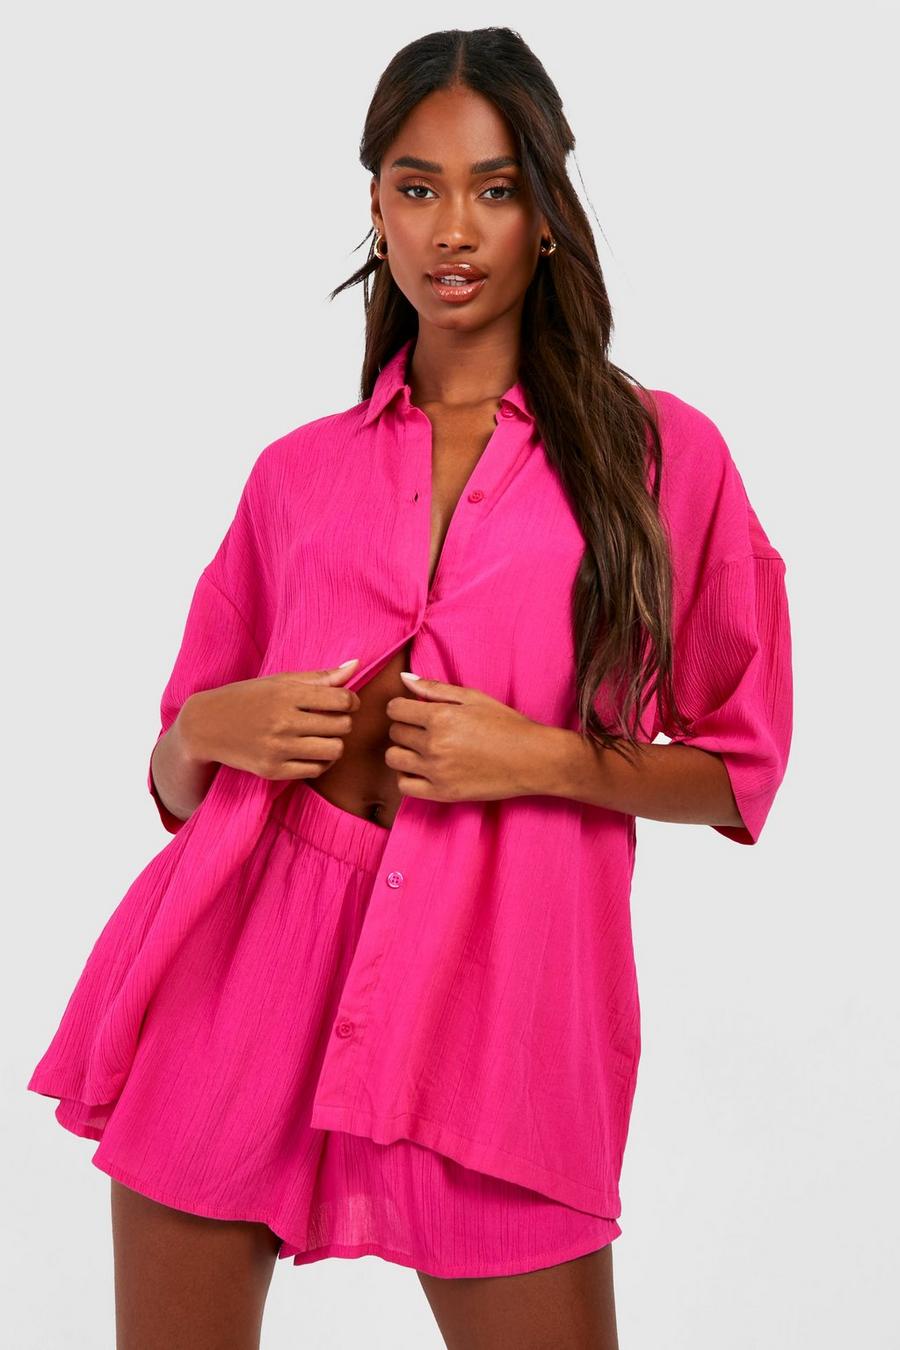 Ensemble texturé avec chemise, short et chouchou, Hot pink